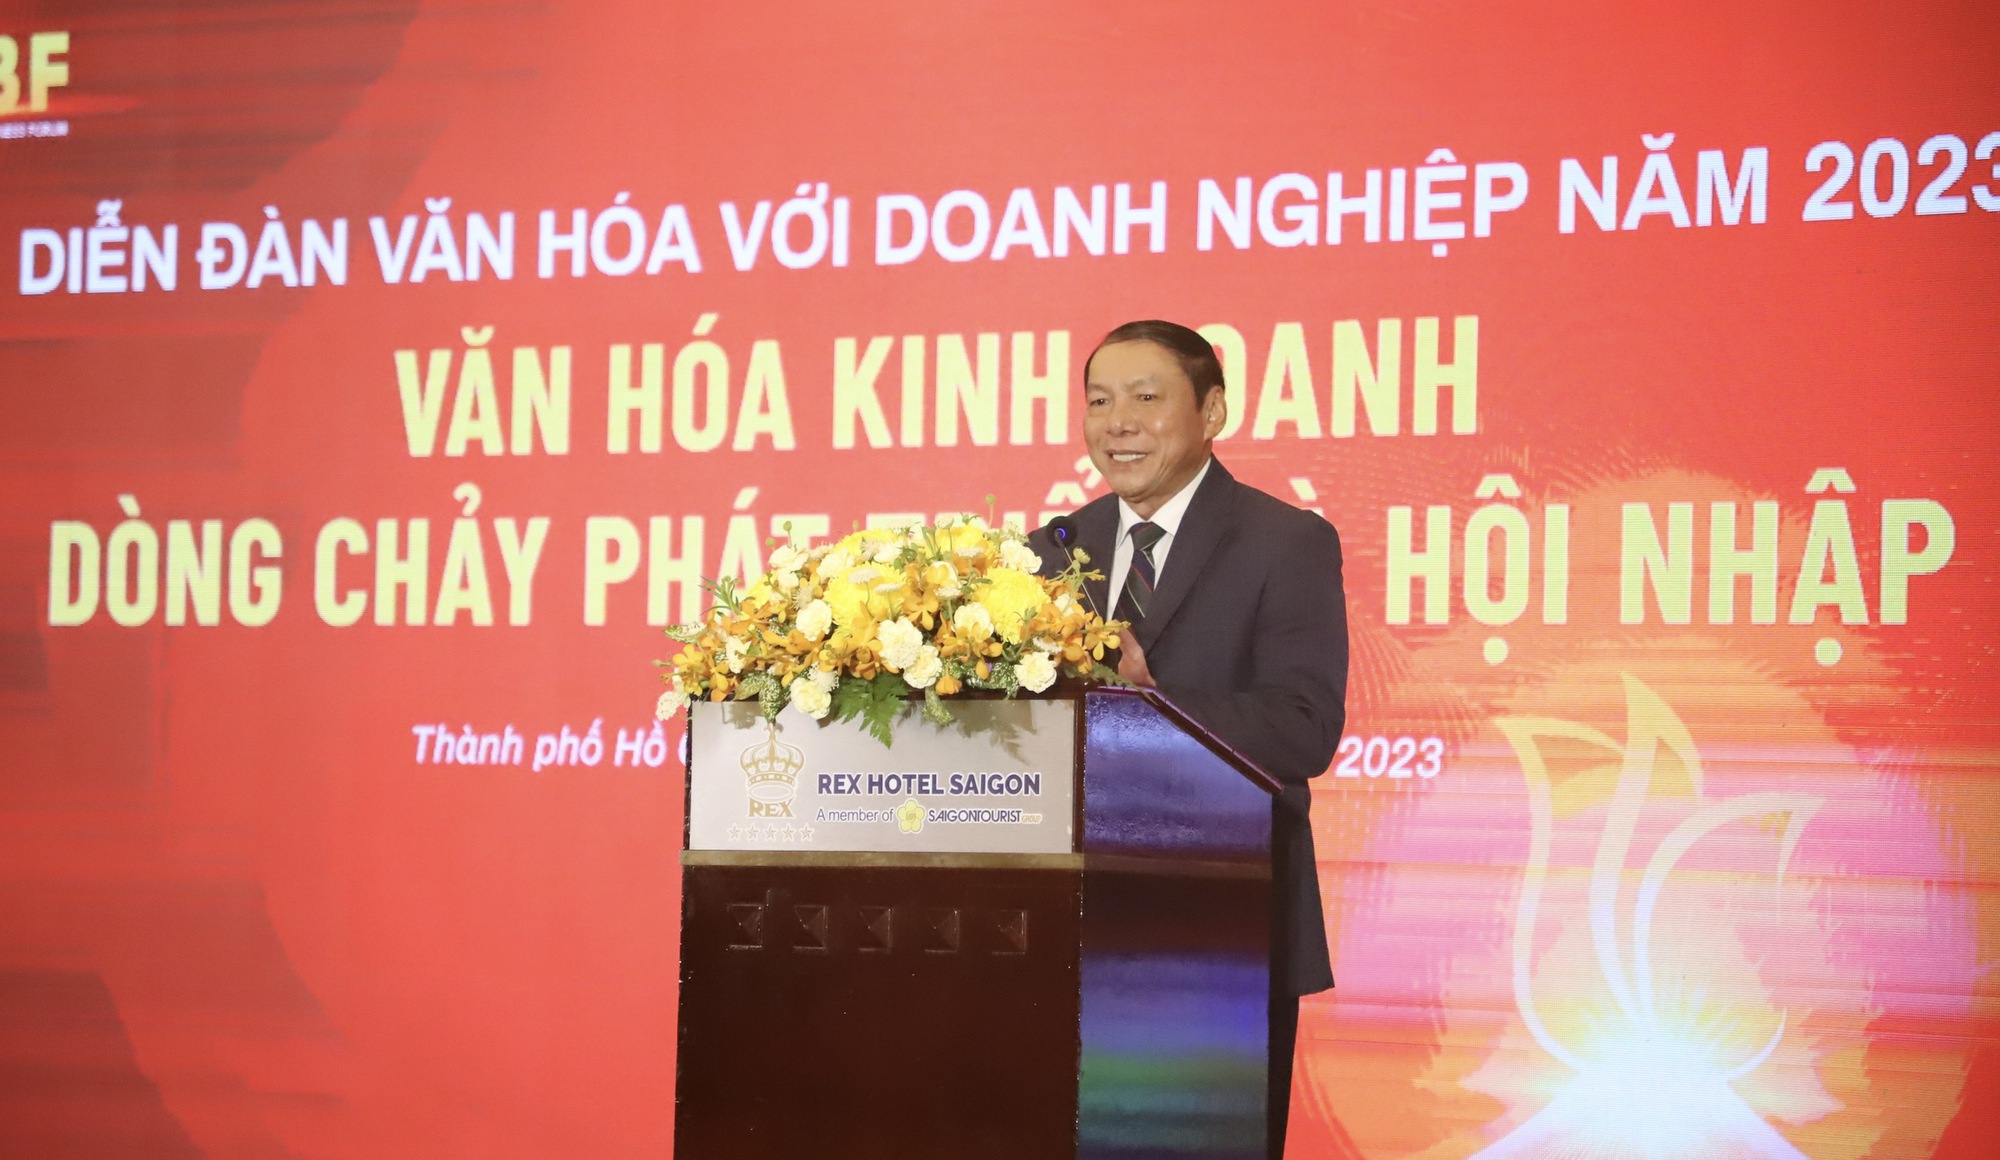 Bộ trưởng Nguyễn Văn Hùng: “Doanh nghiệp là trái tim của nền kinh tế"